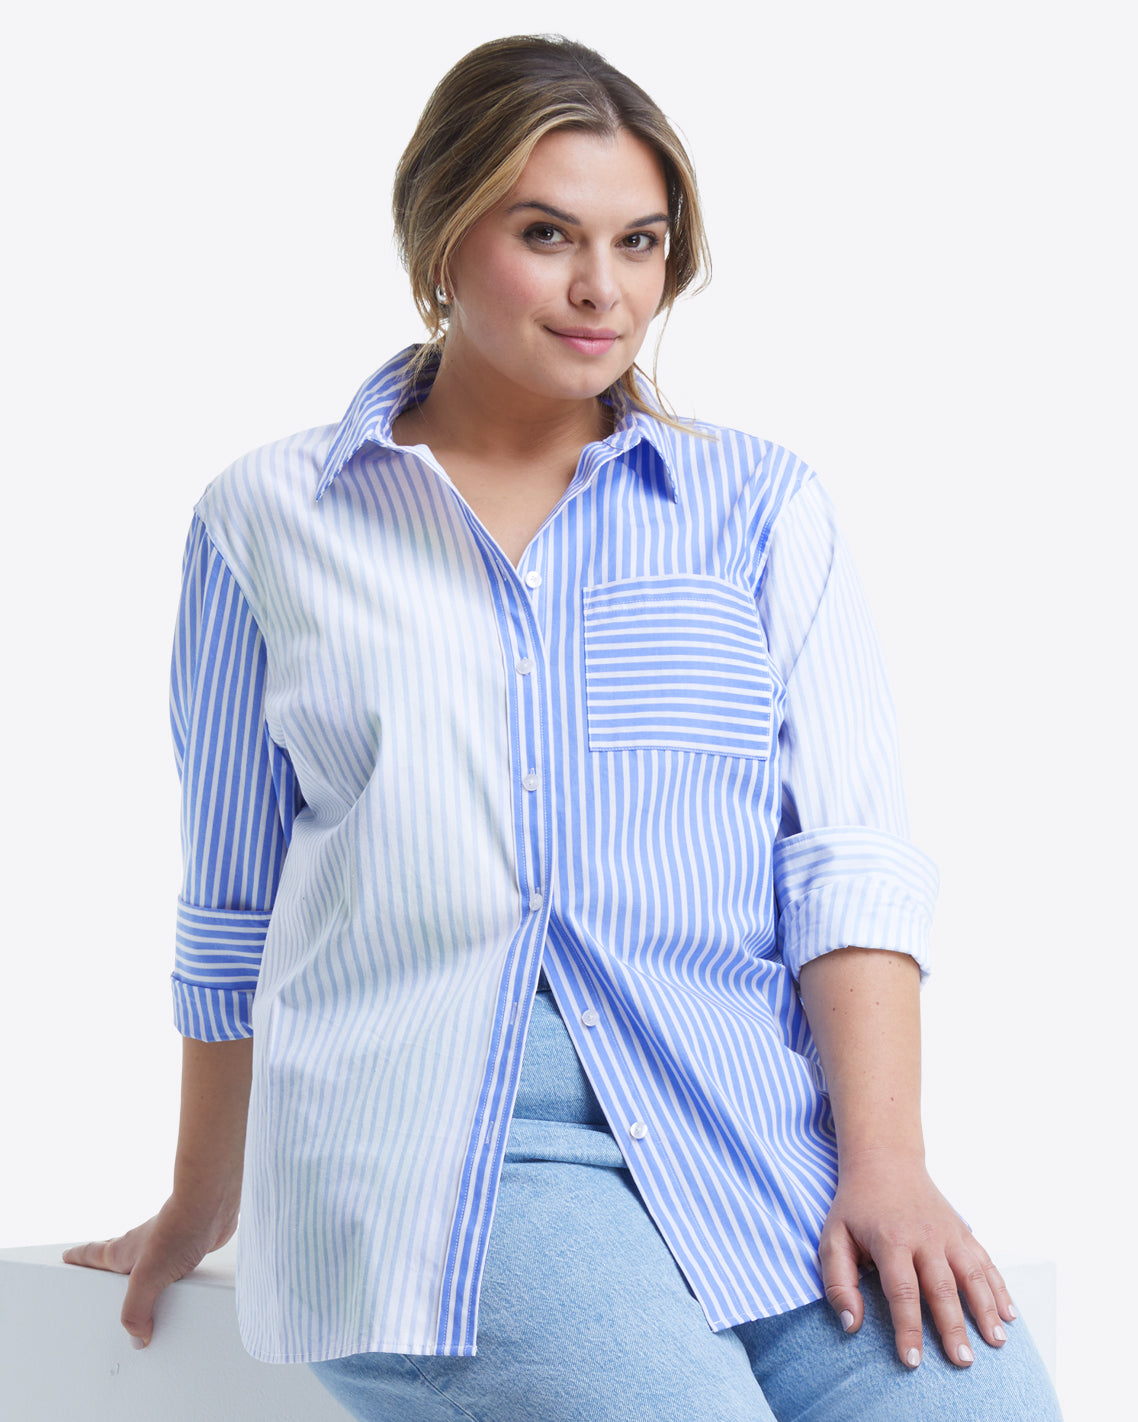 Blue Denim Dress Jumper with Long Sleeve Stripe Shirt Design Template